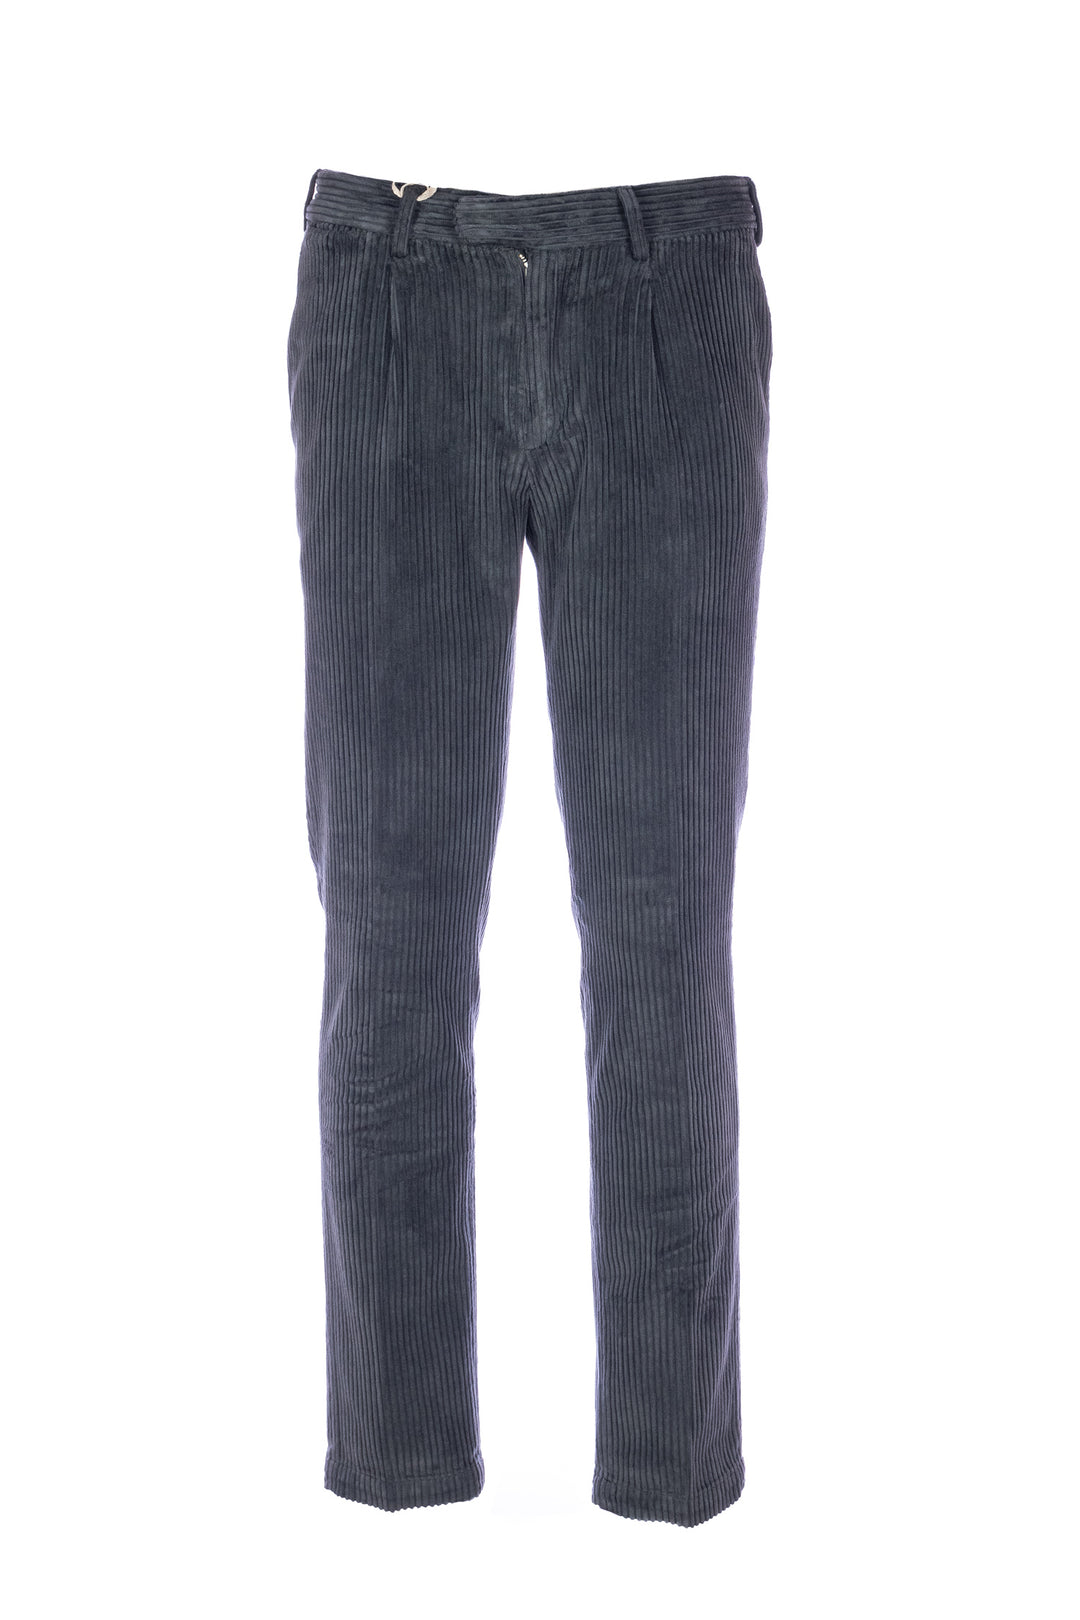 DEVORE Pantalone grigio scuro in velluto rocciatore con vita elastica - Mancinelli 1954